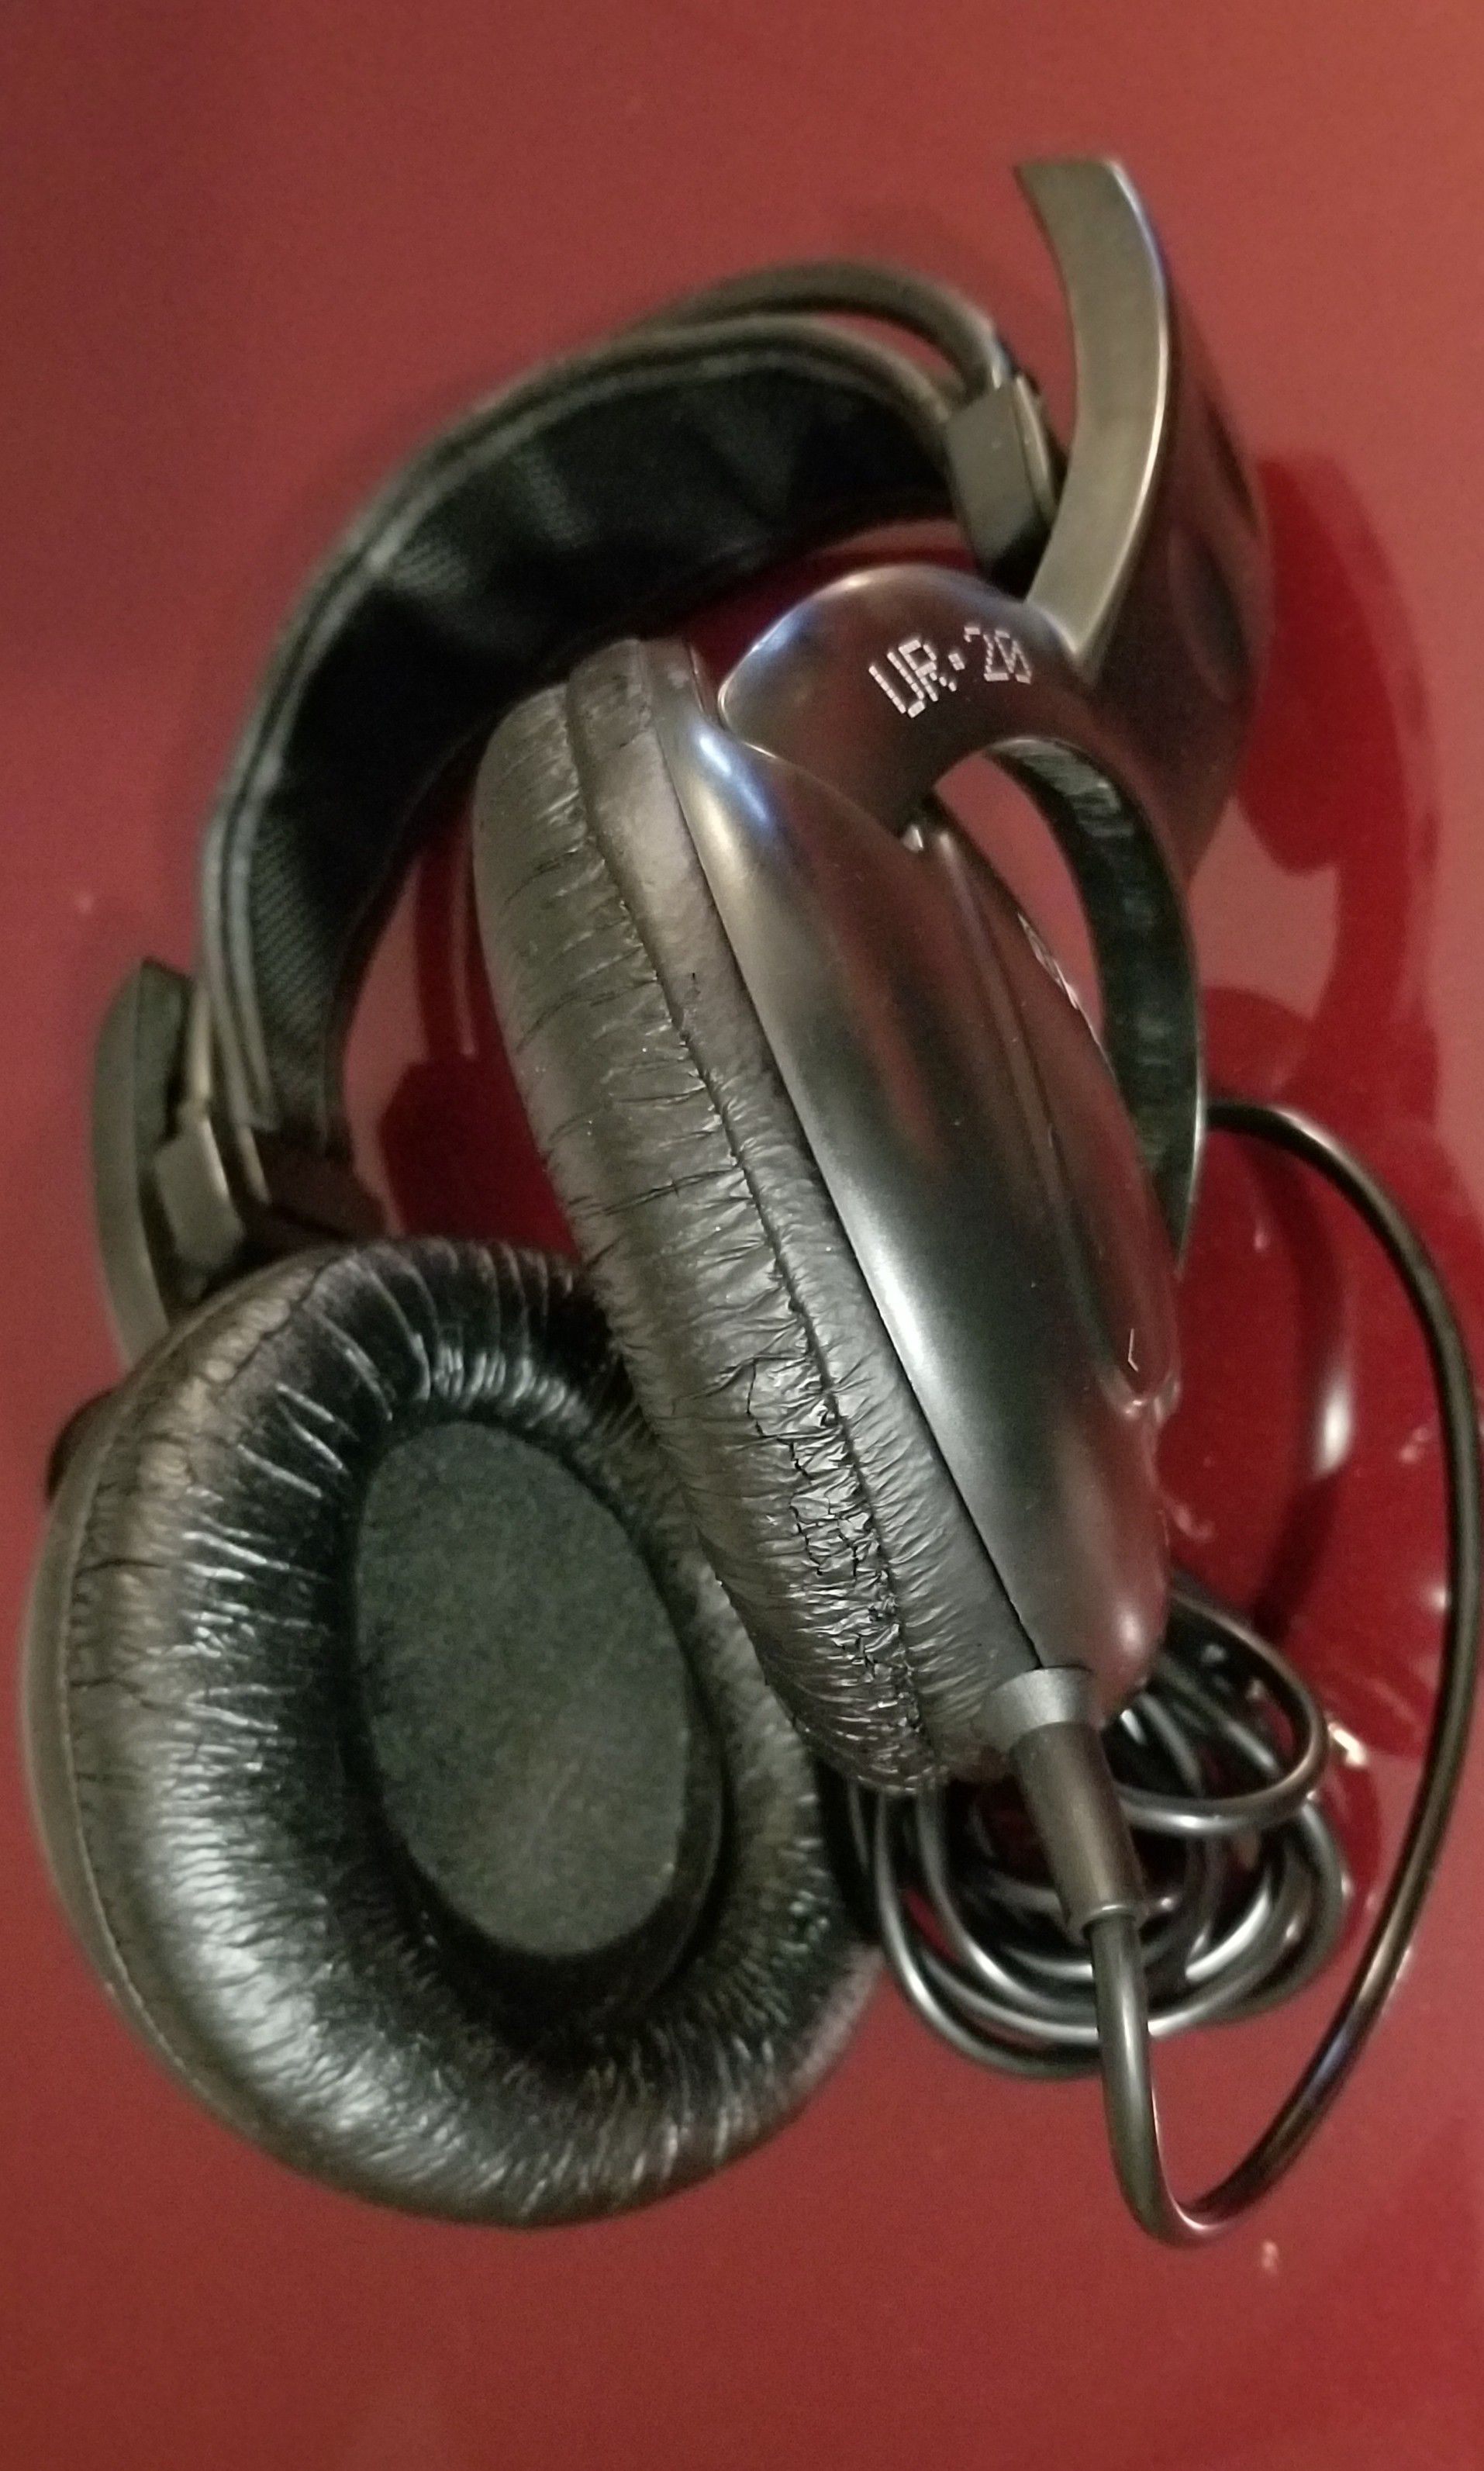 Studio Headphones